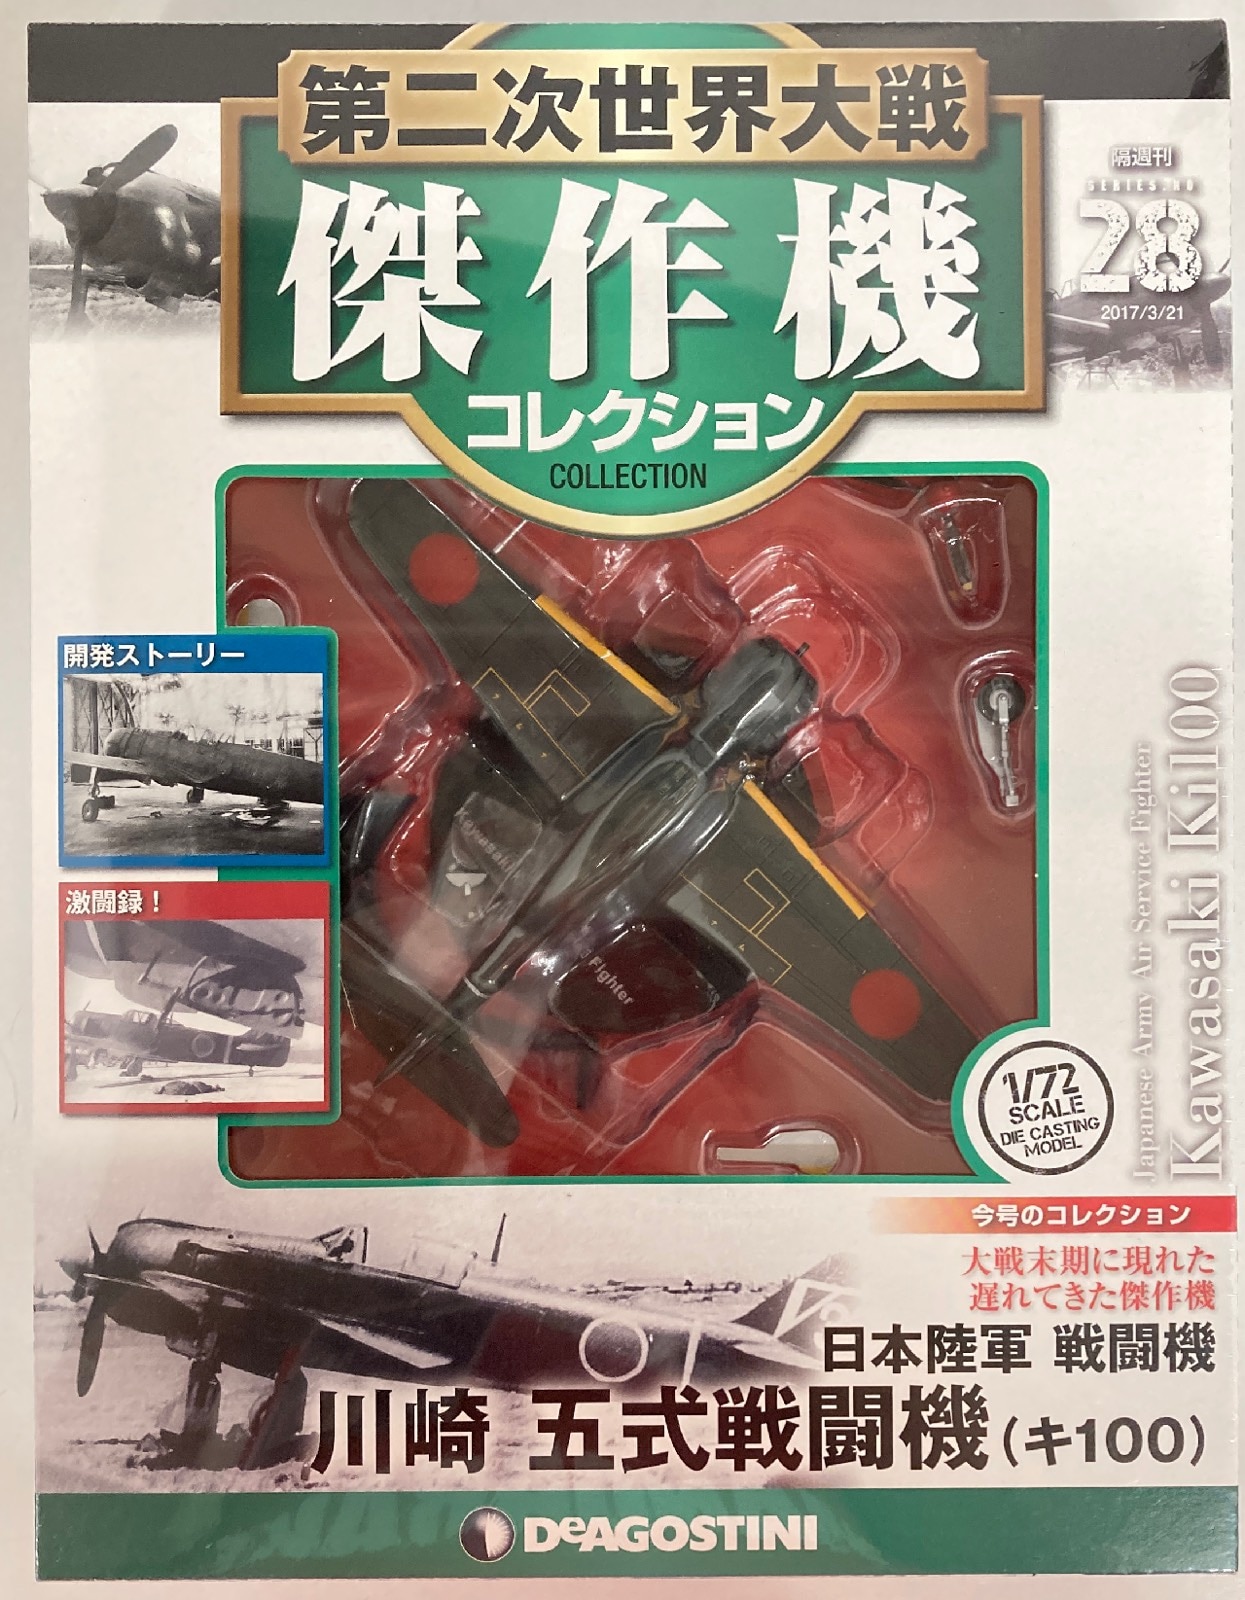 デアゴスティーニ第二次世界大戦 傑作機コレクション04日本陸軍航空隊